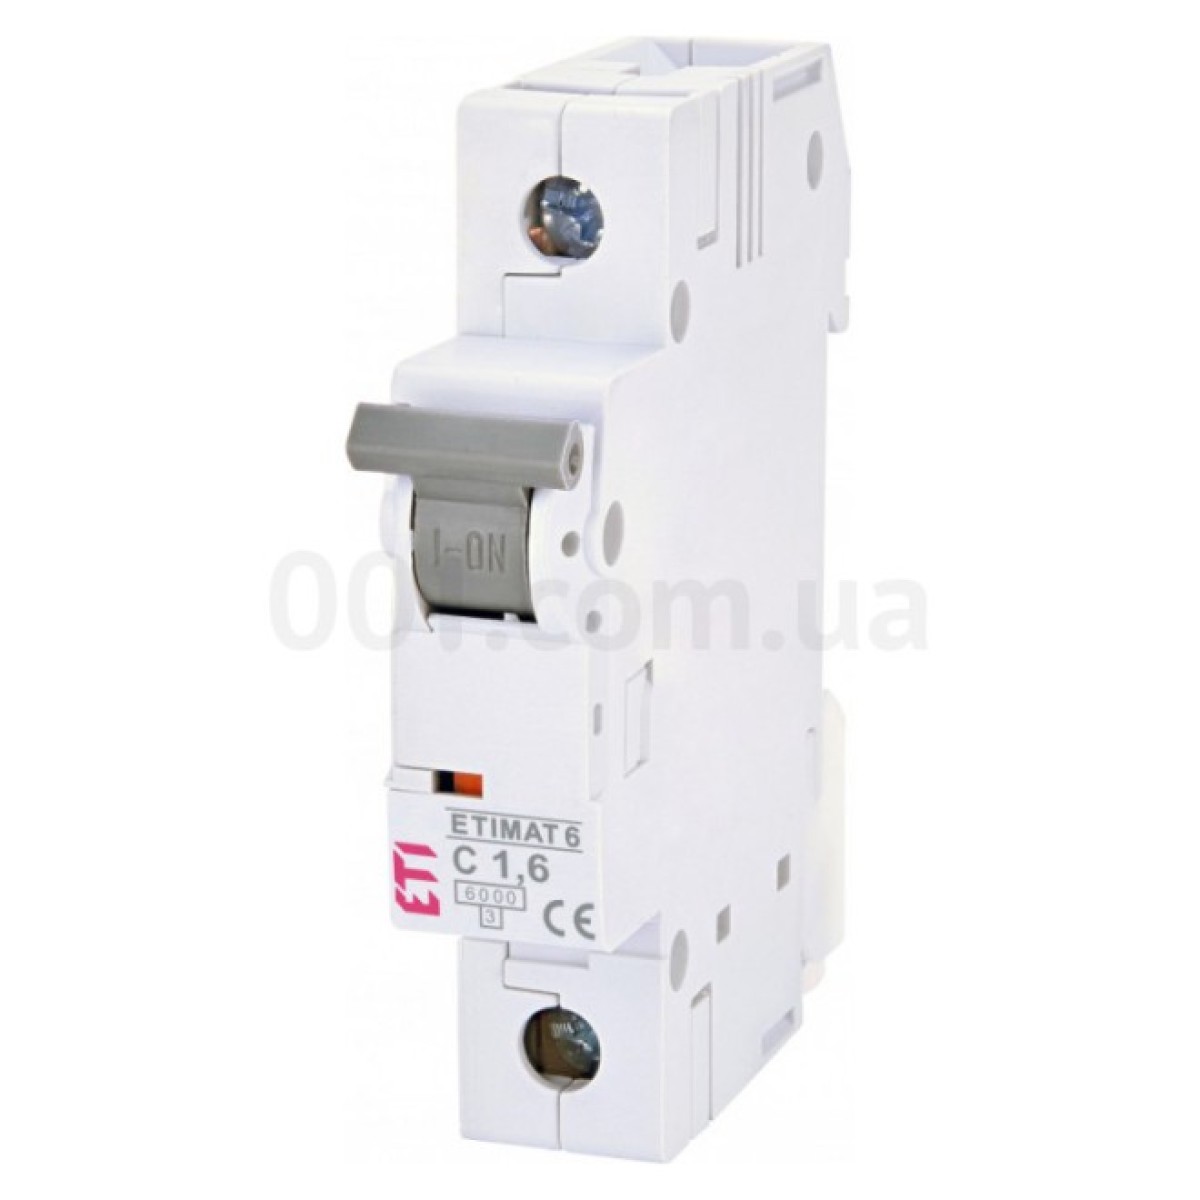 Автоматичний вимикач ETIMAT 6 (6кА) 1P 1,6 А хар-ка C, ETI 256_256.jpg